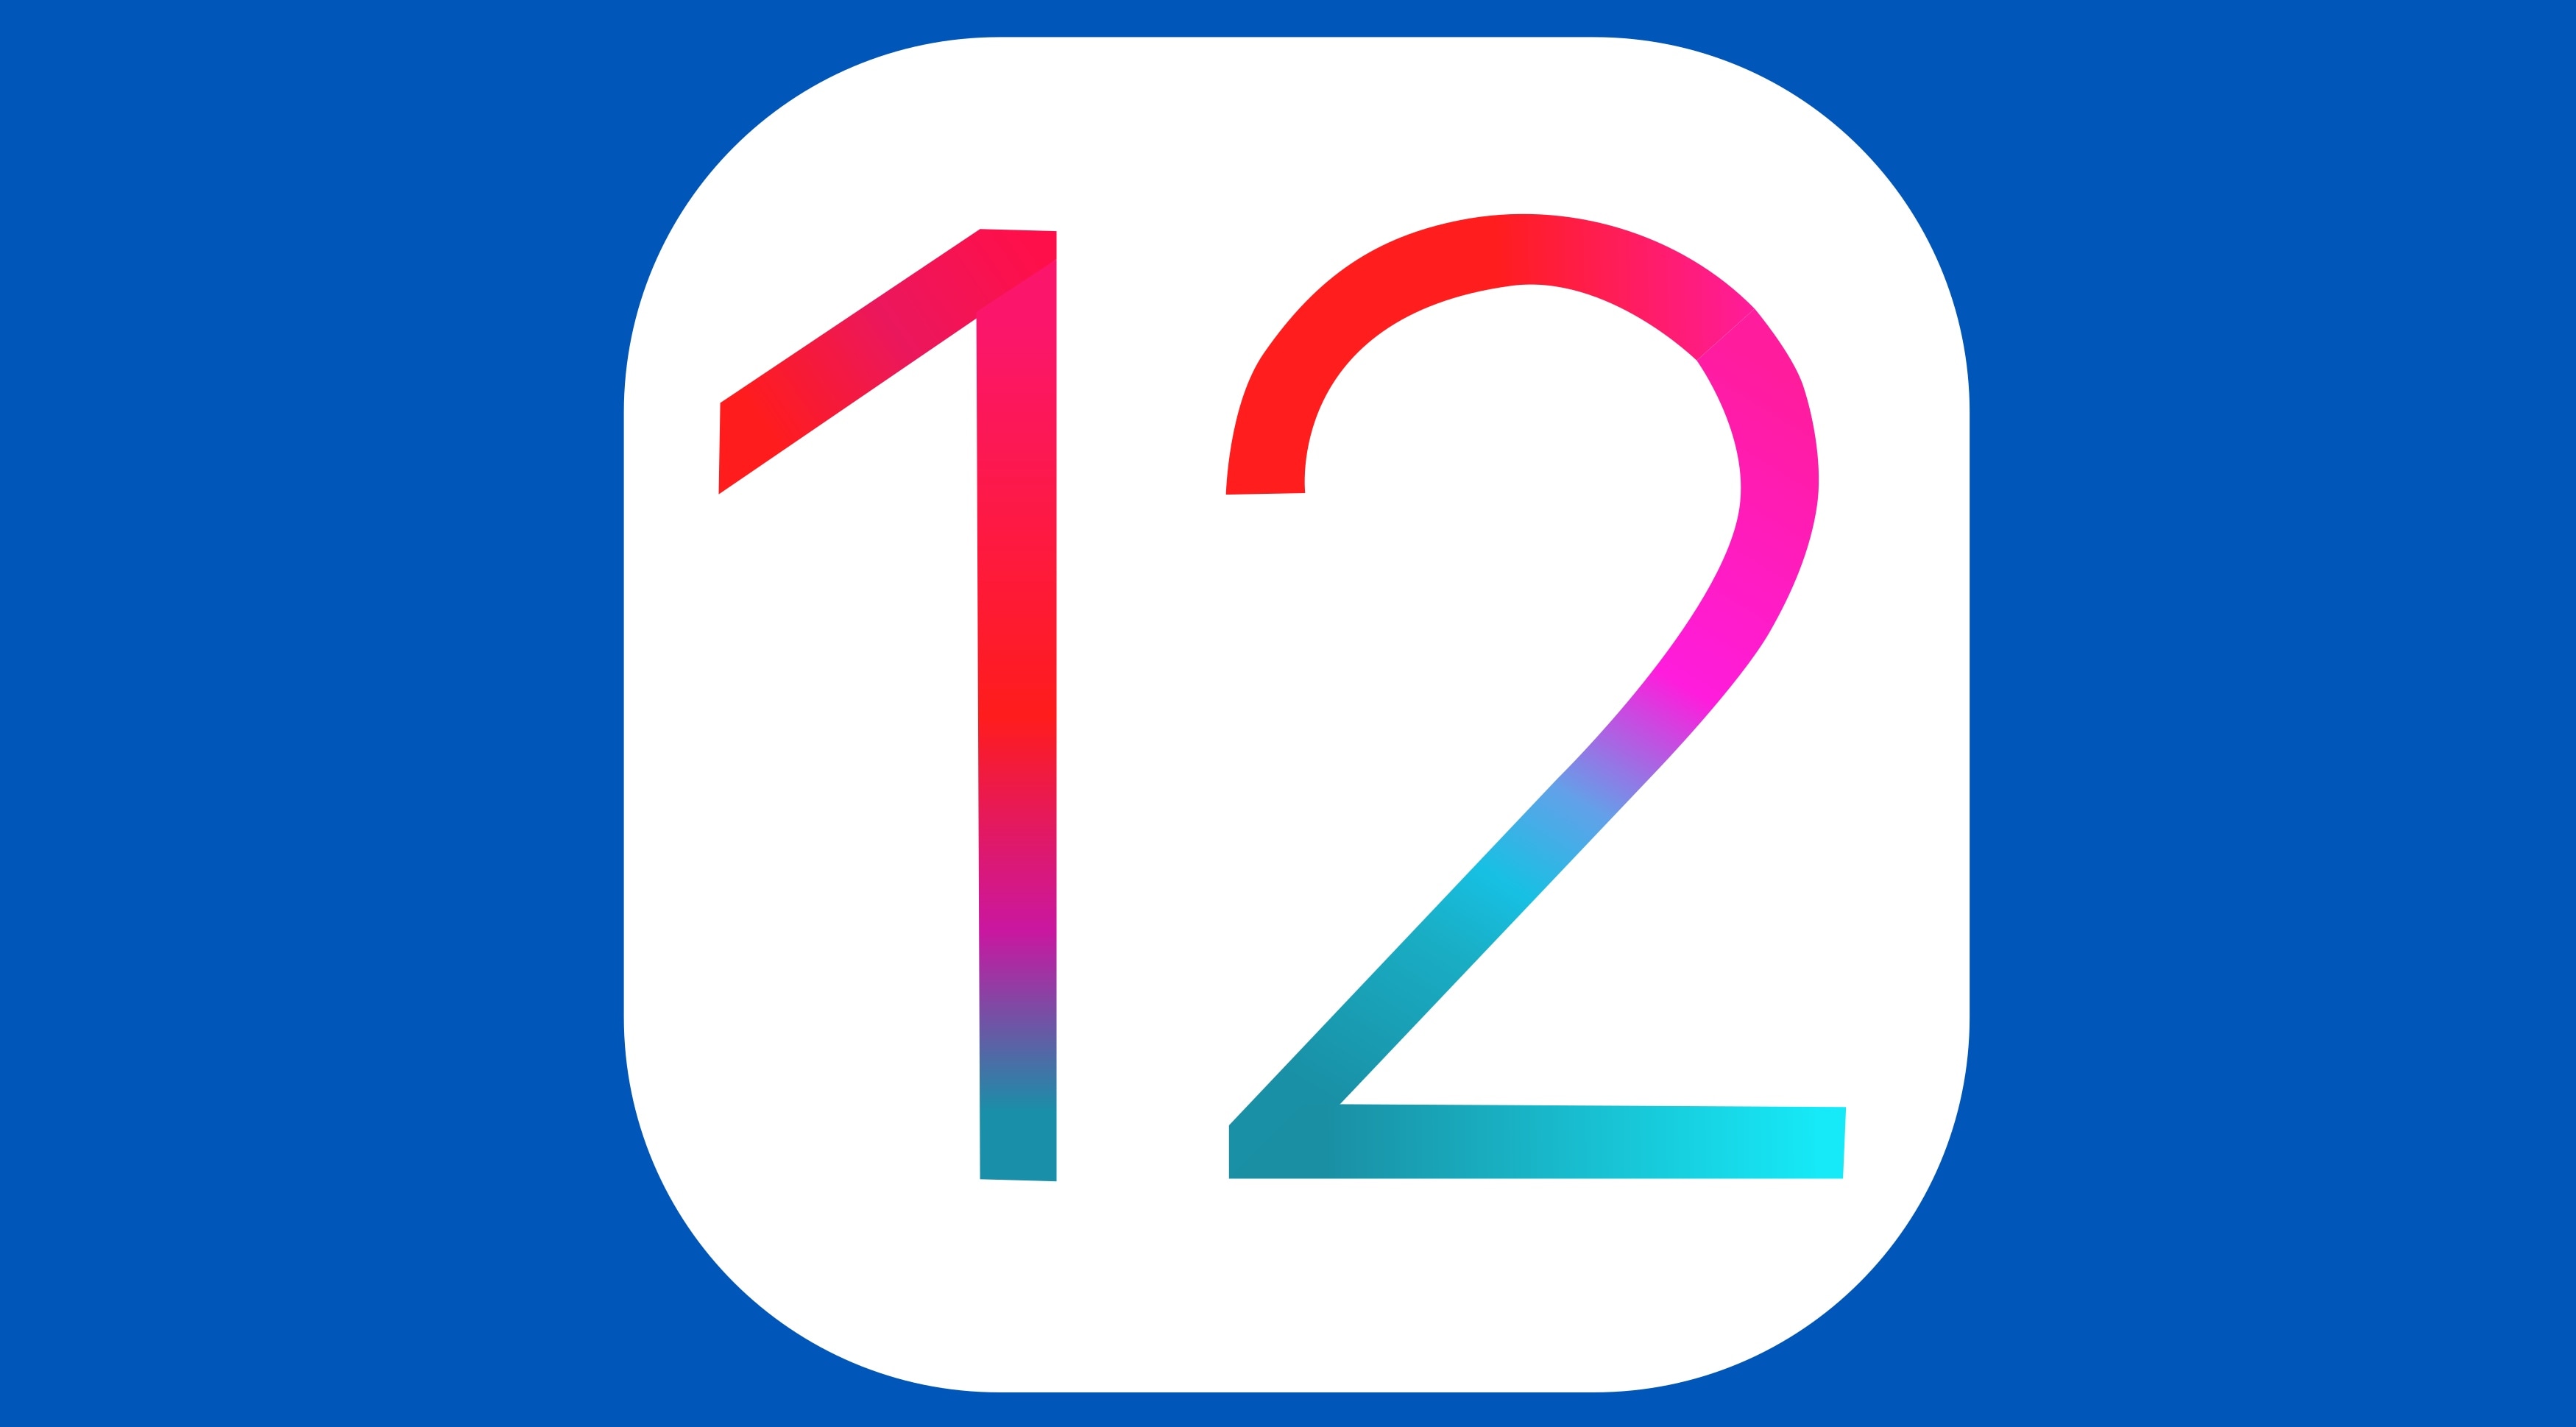 Apple slutar signera iOS 12.4, undviker att nedgradera till jailbreakable firmware 2